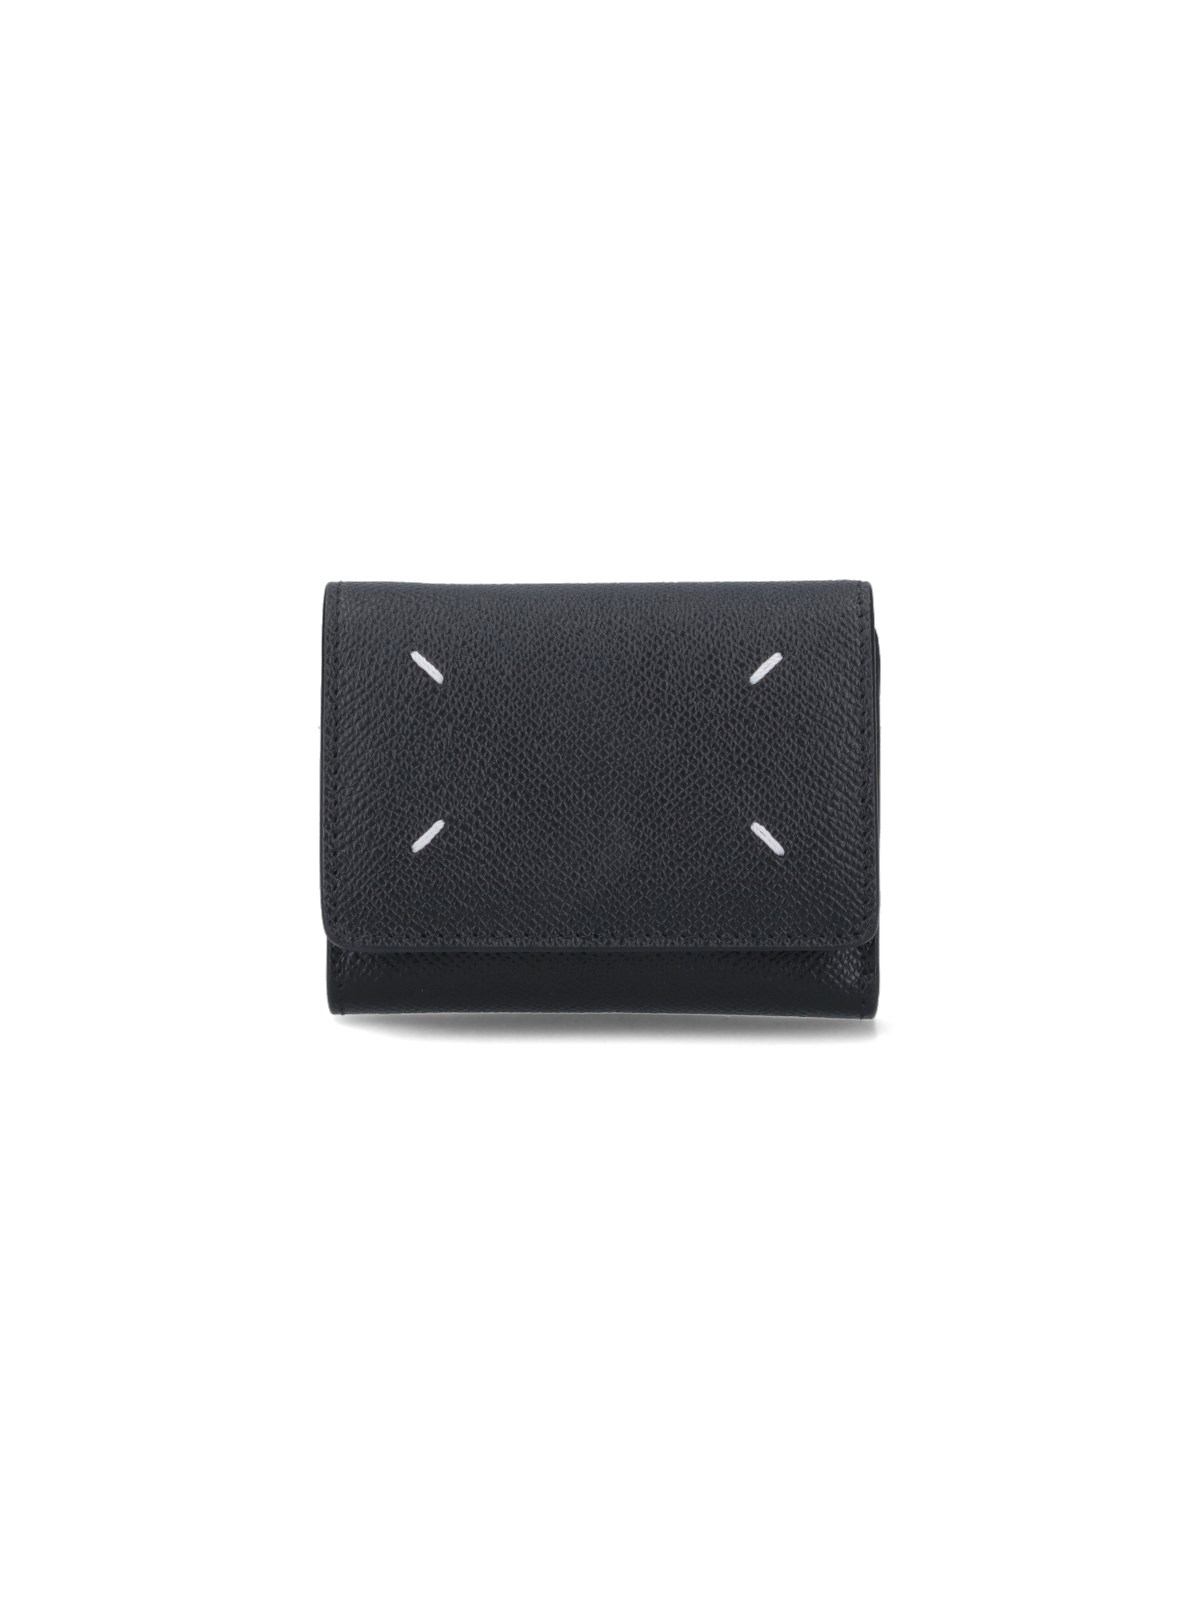 Maison Margiela Leather Wallet In Black  